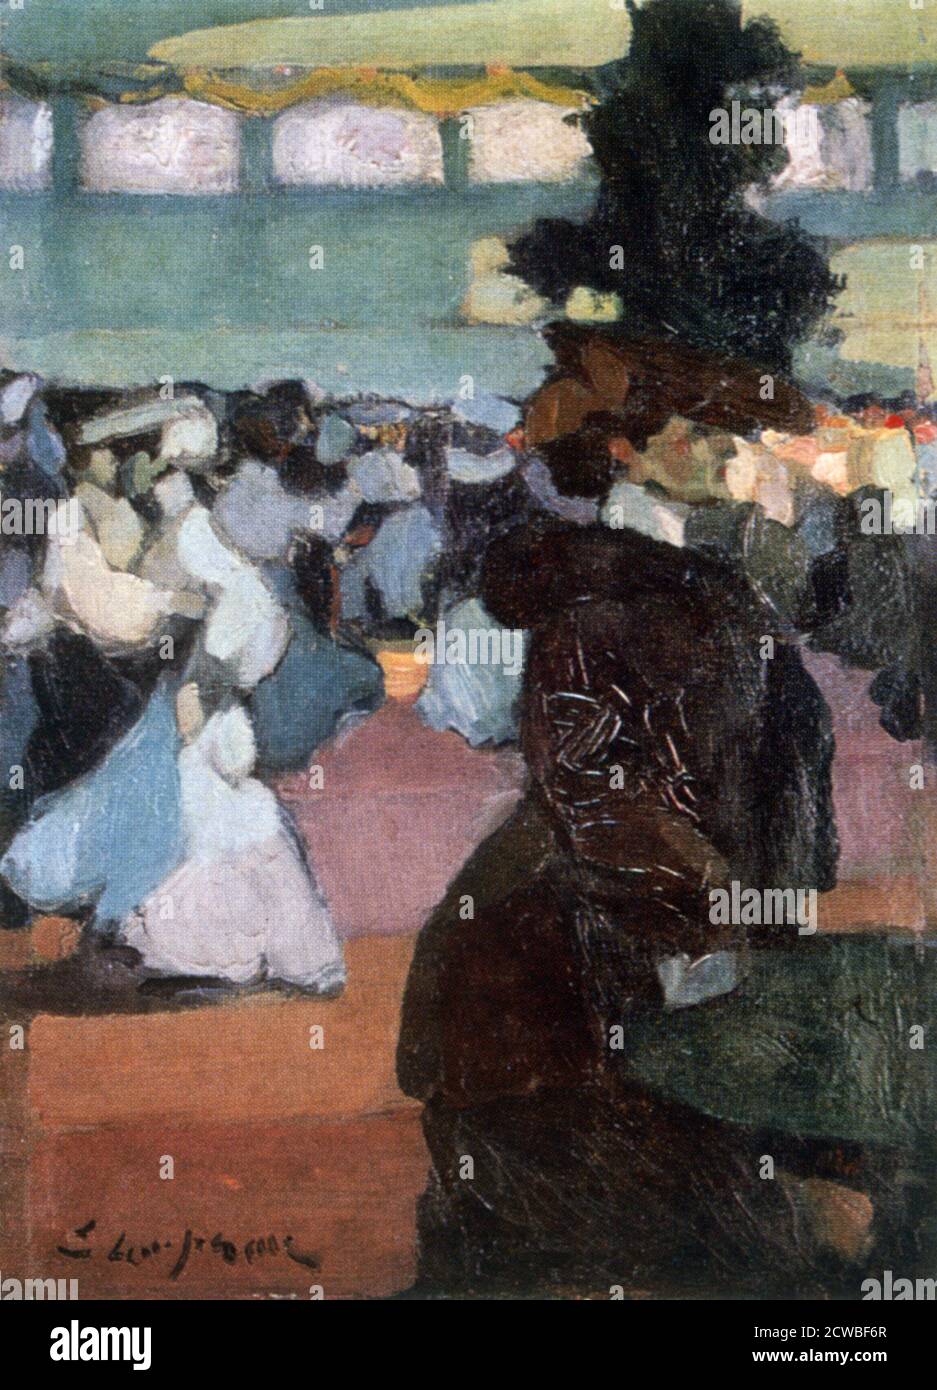 Ecke des Balls', 1905. Künstler: Edmond Lempereur. Edmond Lempereur (1876-1909) ist ein französischer Maler, Zeichner und Kupferstecher. Stockfoto